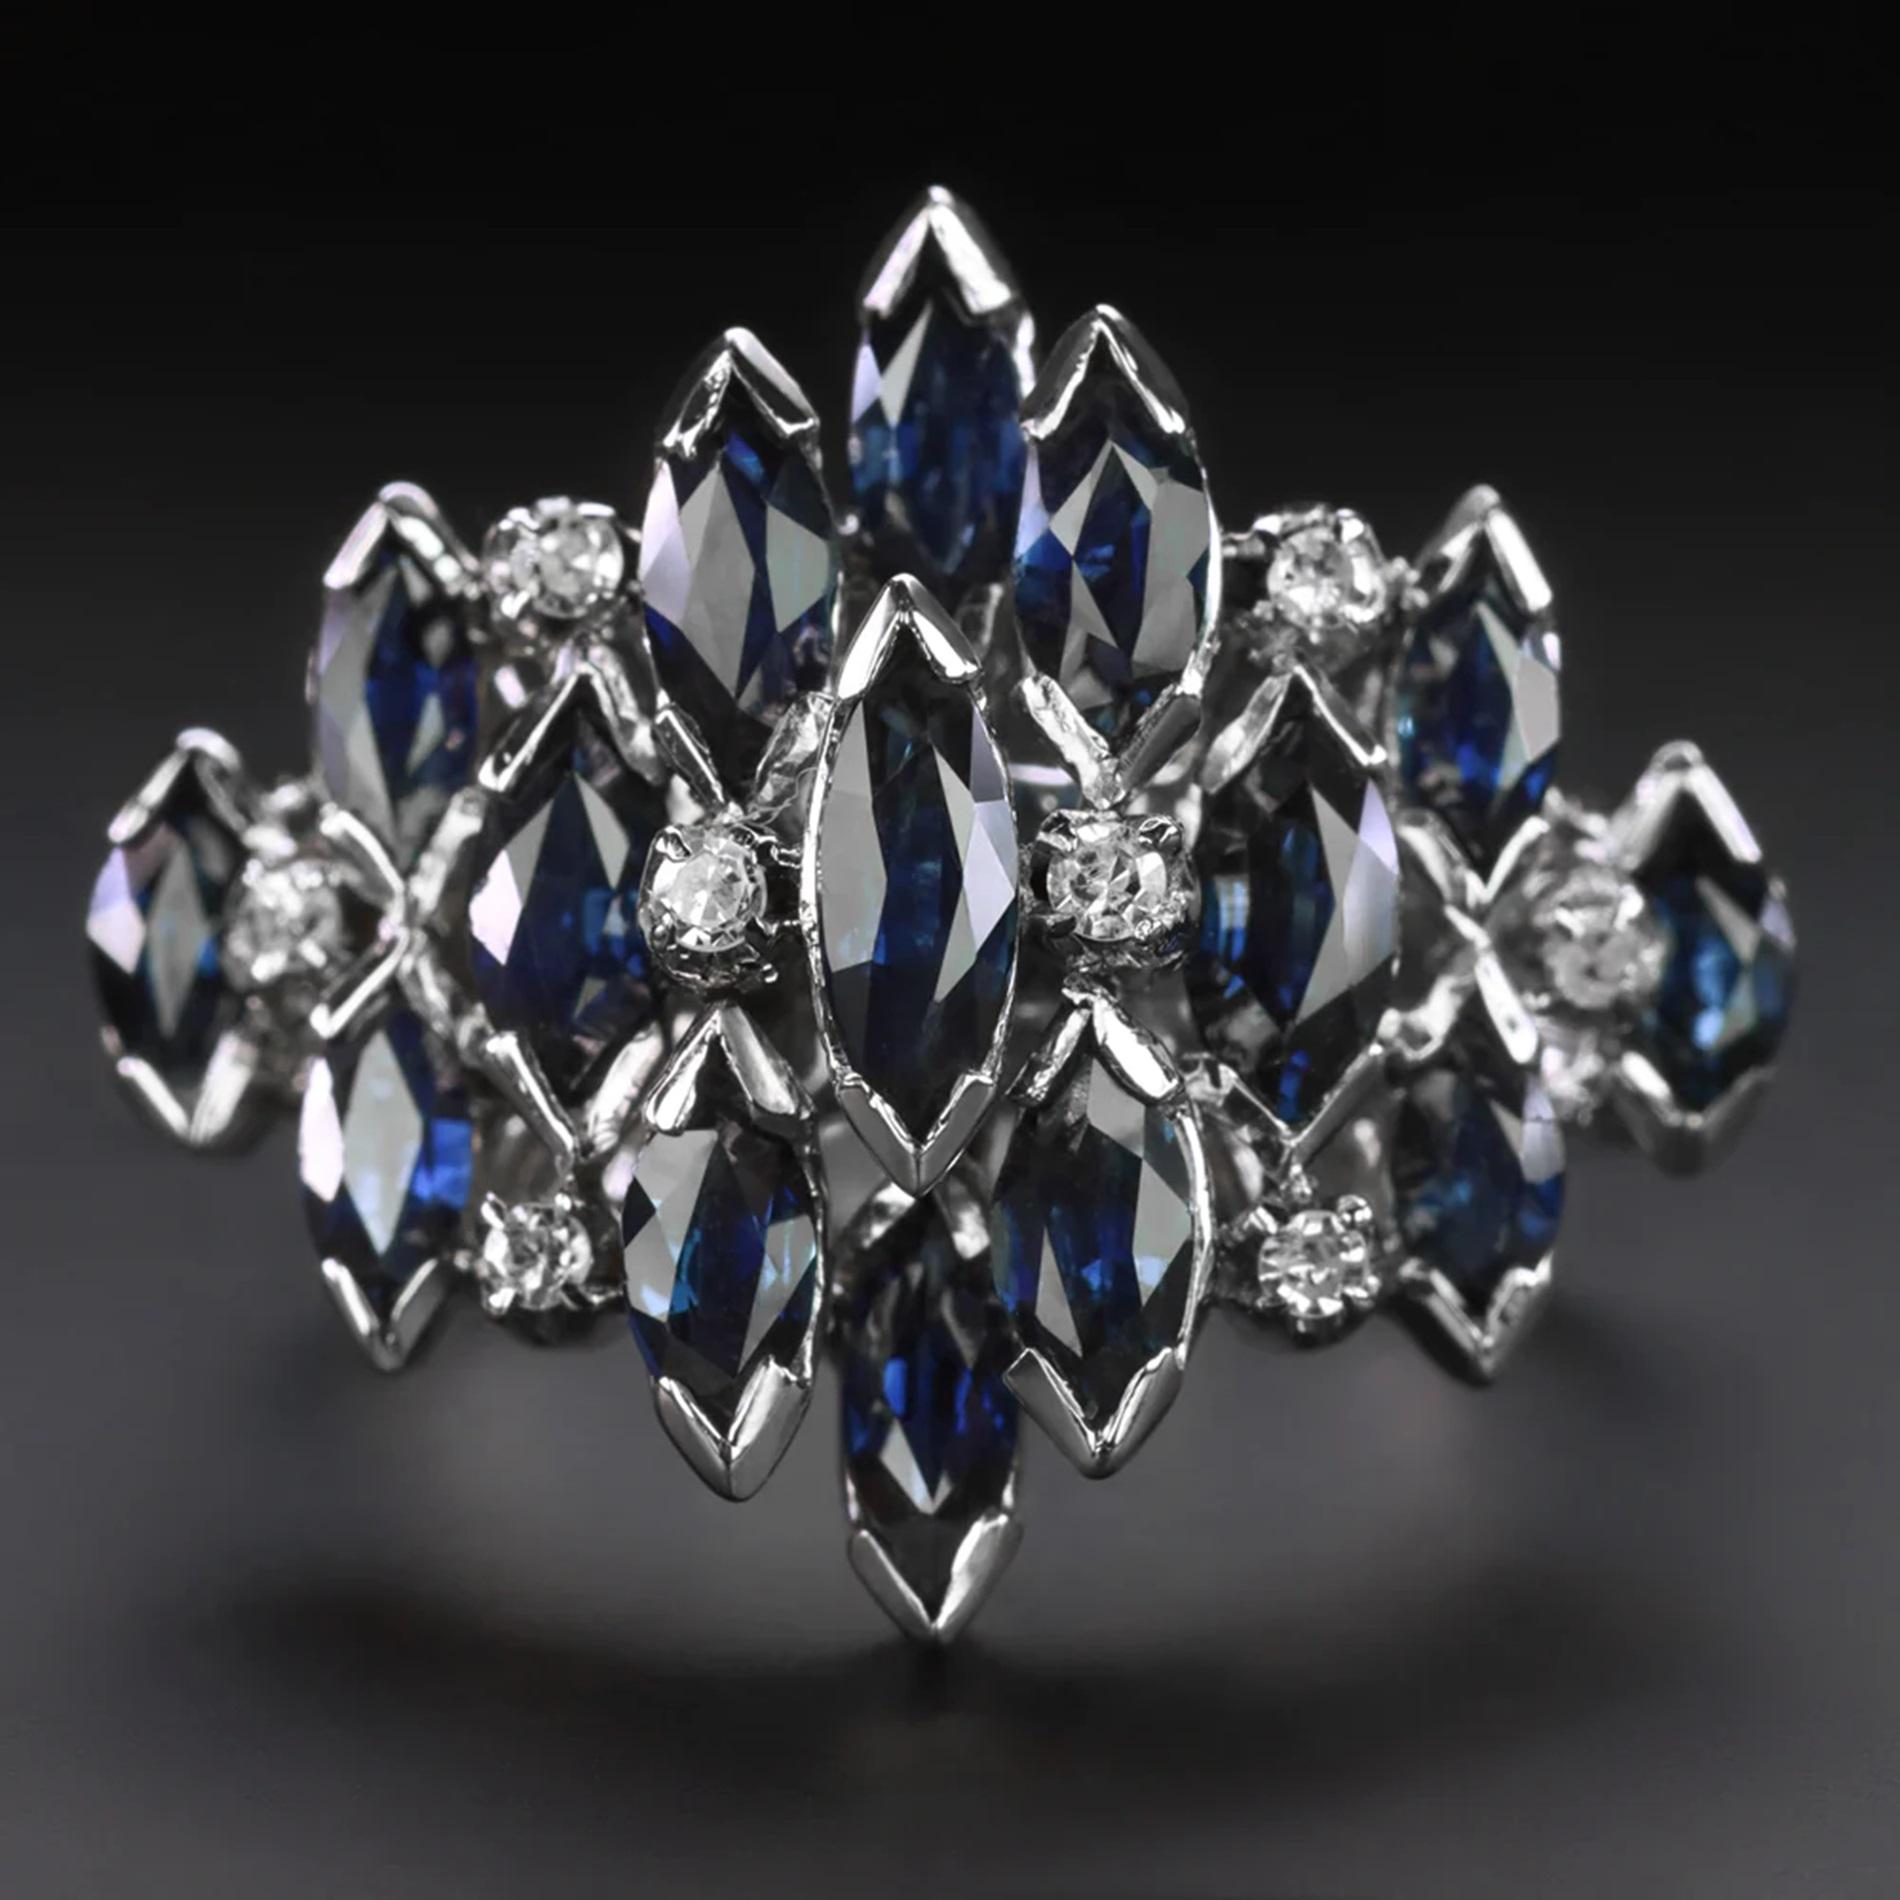 Dieser Ring mit Saphiren und Diamanten im Vintage-Stil hat ein einzigartiges und elegantes Design mit einem kühnen Saphircluster, der mit glitzernden Diamanten durchsetzt ist.

Höhepunkte:

- Original Jahrgang

- 3 Karat reicher blauer natürlicher